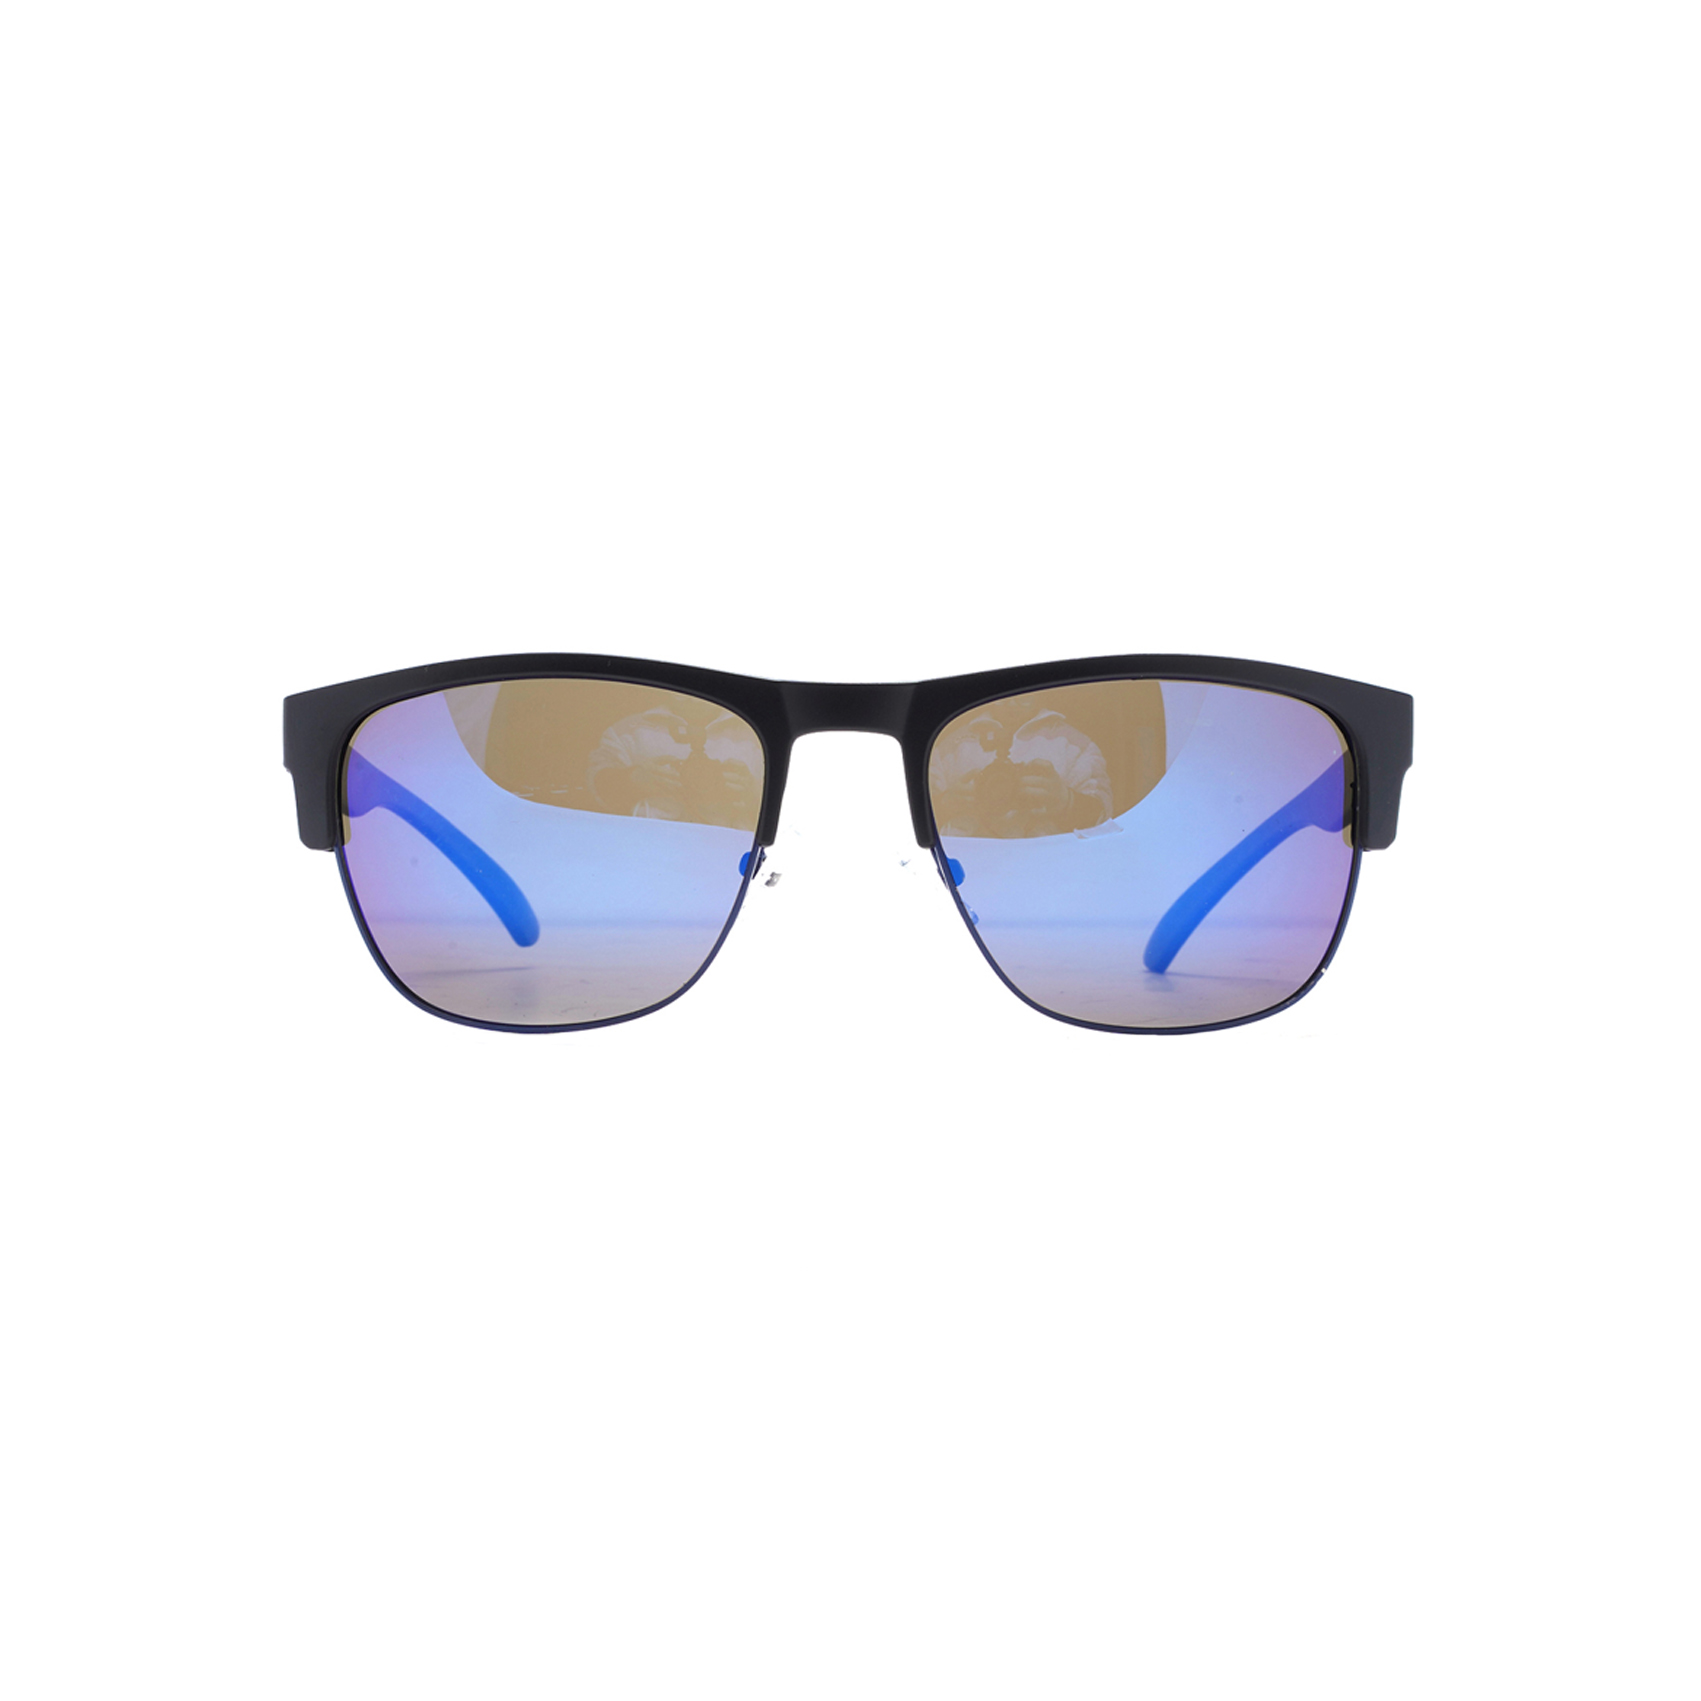 Stylish Black Clubmaster Style Sunglasses Polarized Wholesale Womens Sunglasses